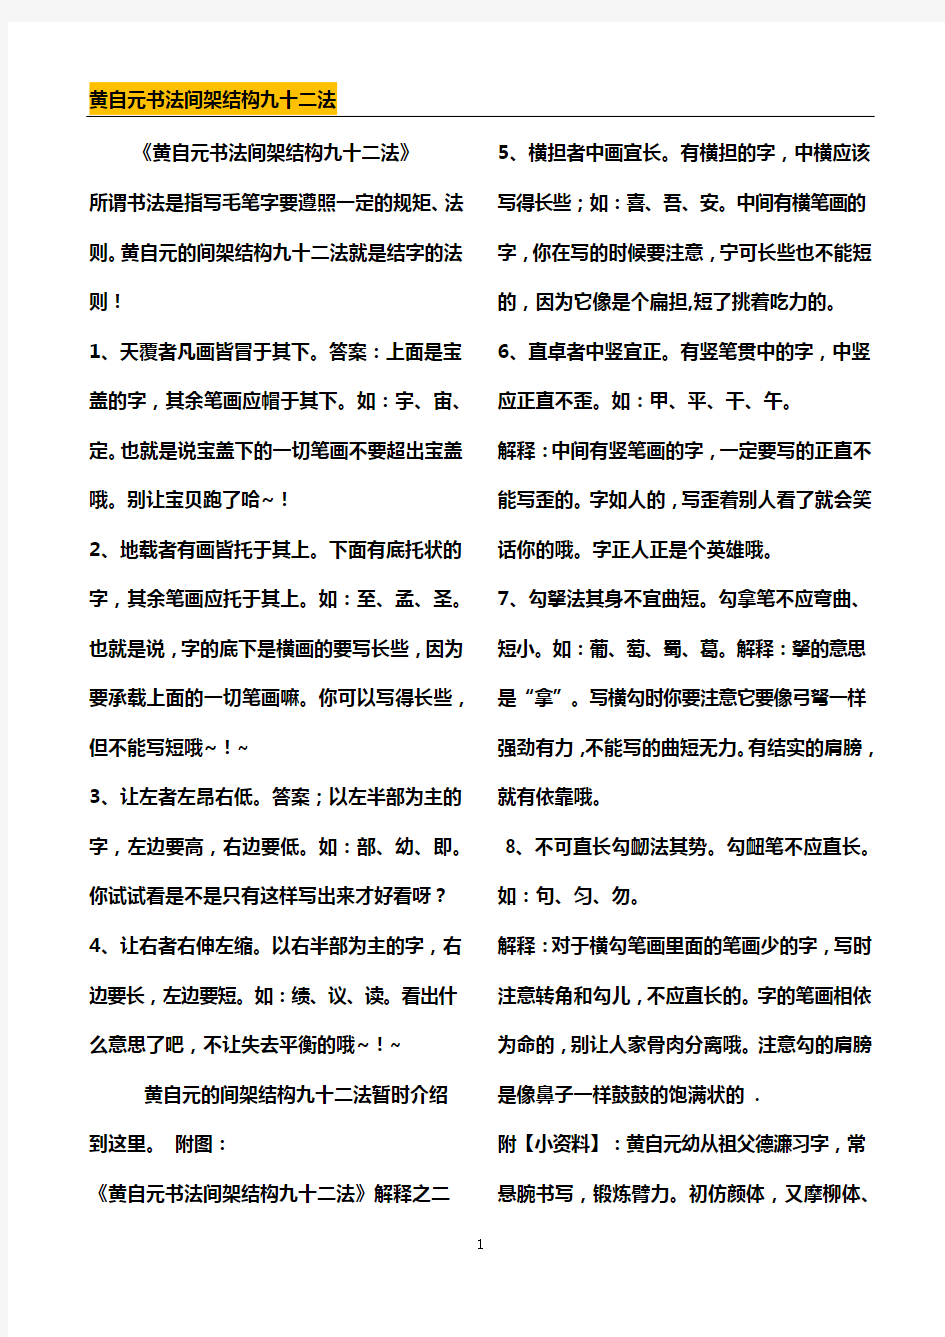 黄自元书法间架结构九十二法